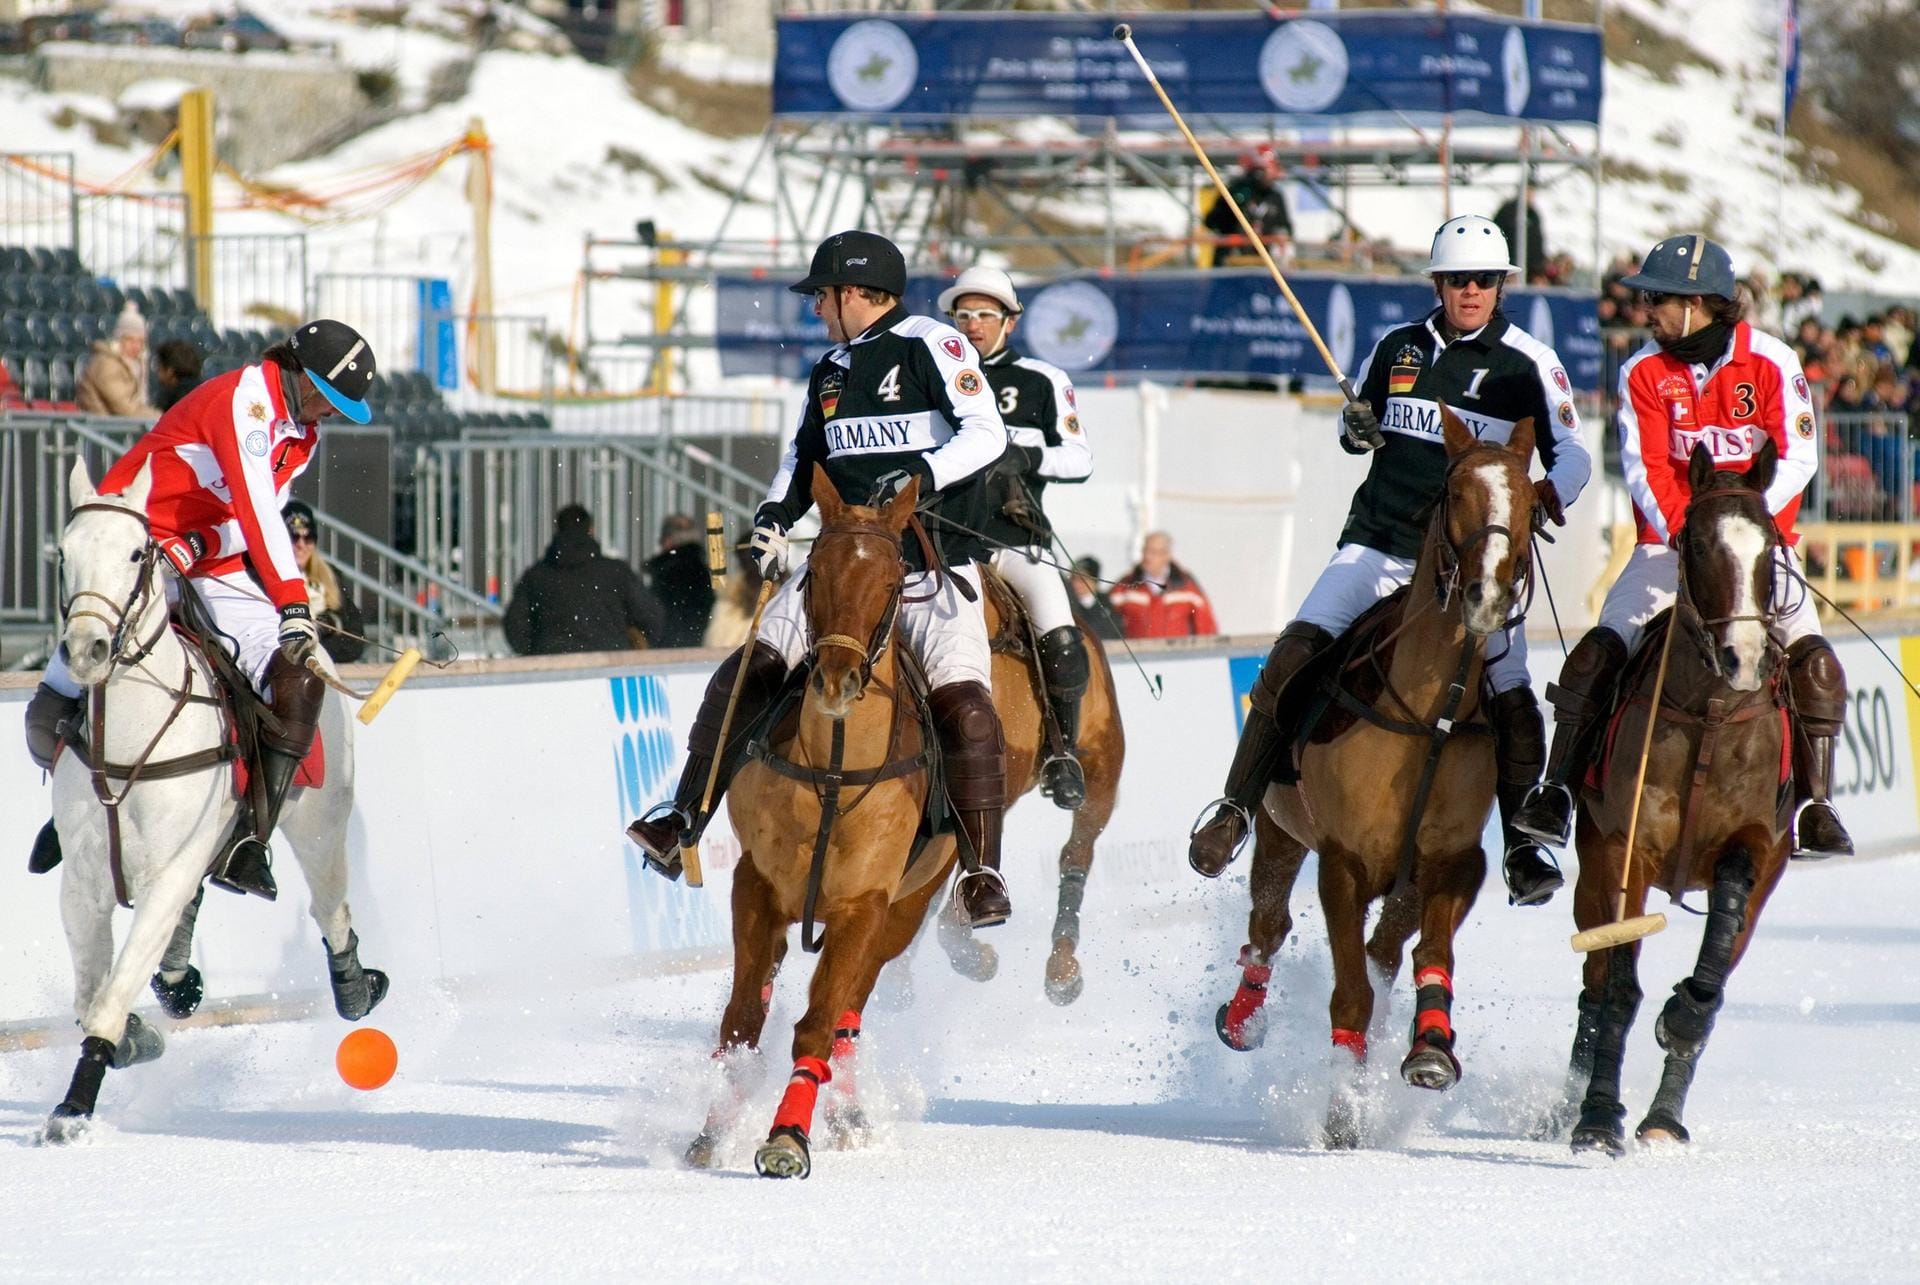 Hier findet auch jedes Jahr der Snow Polo Cup statt – das wichtigste Snow Polo Turnier der Welt mit extrem hoher Pelz-Dichte.